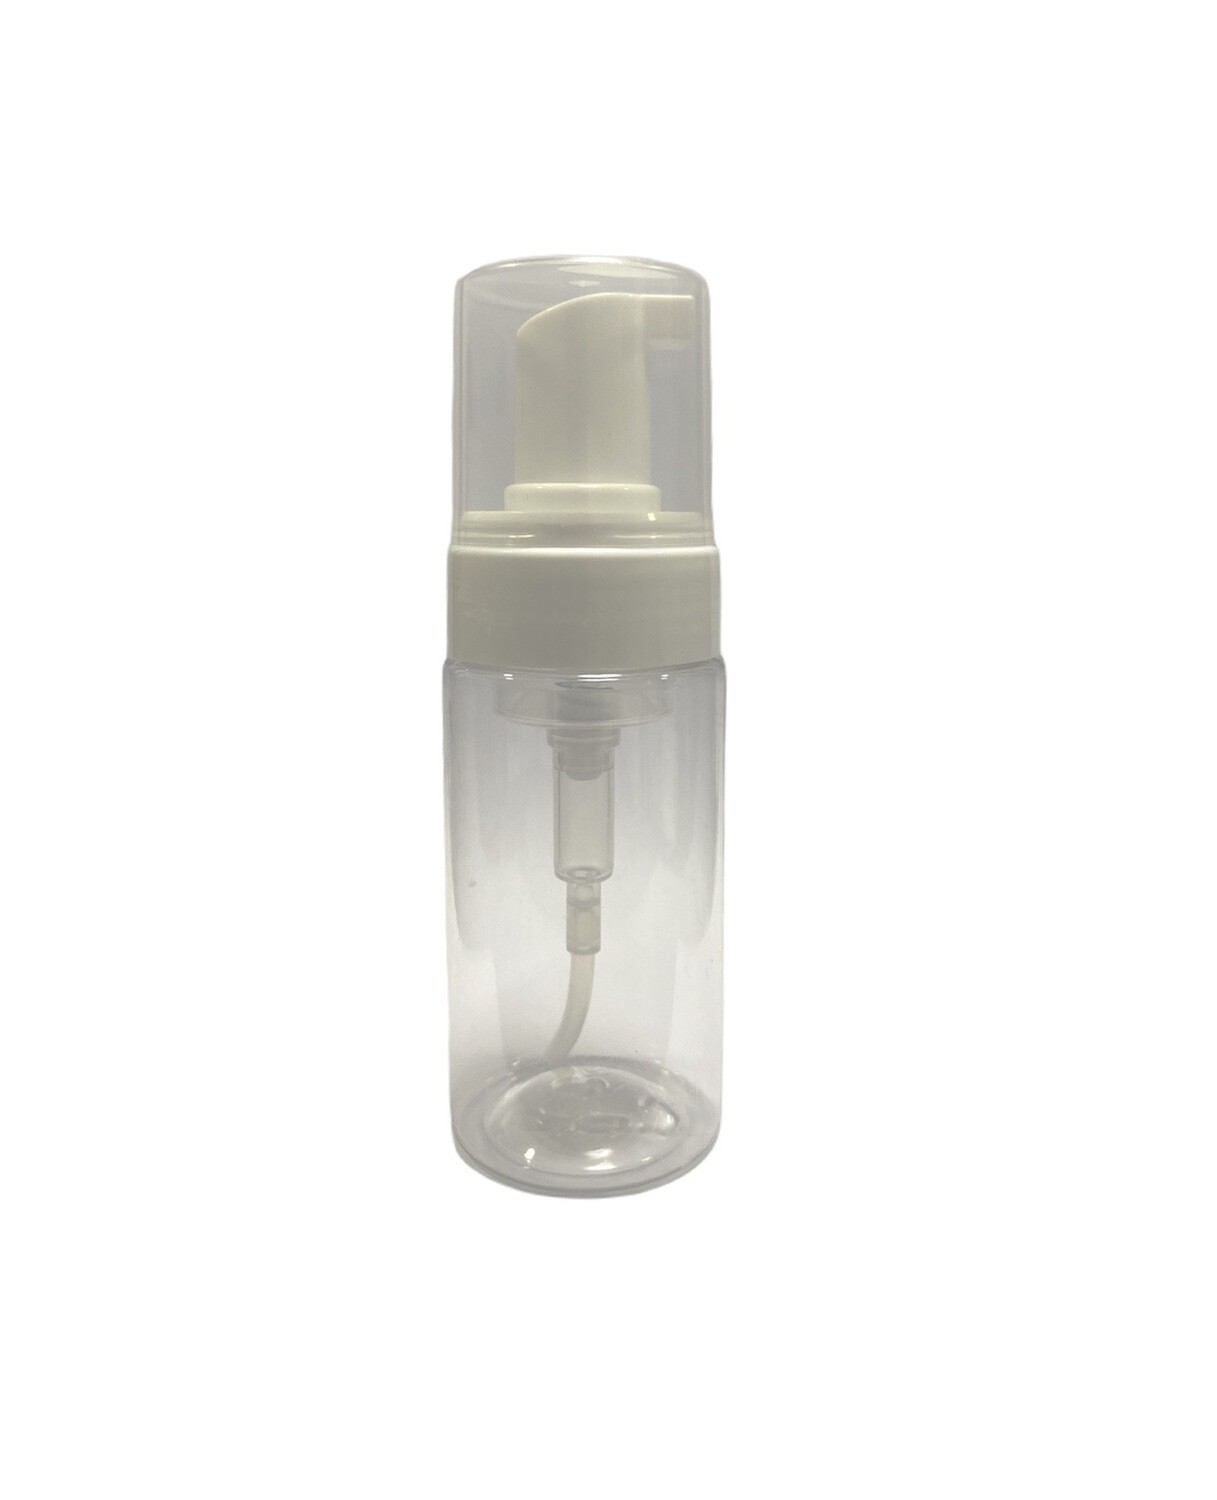 100ml, Pet Plastic Foaming Bottle Clear, White Pump Cap